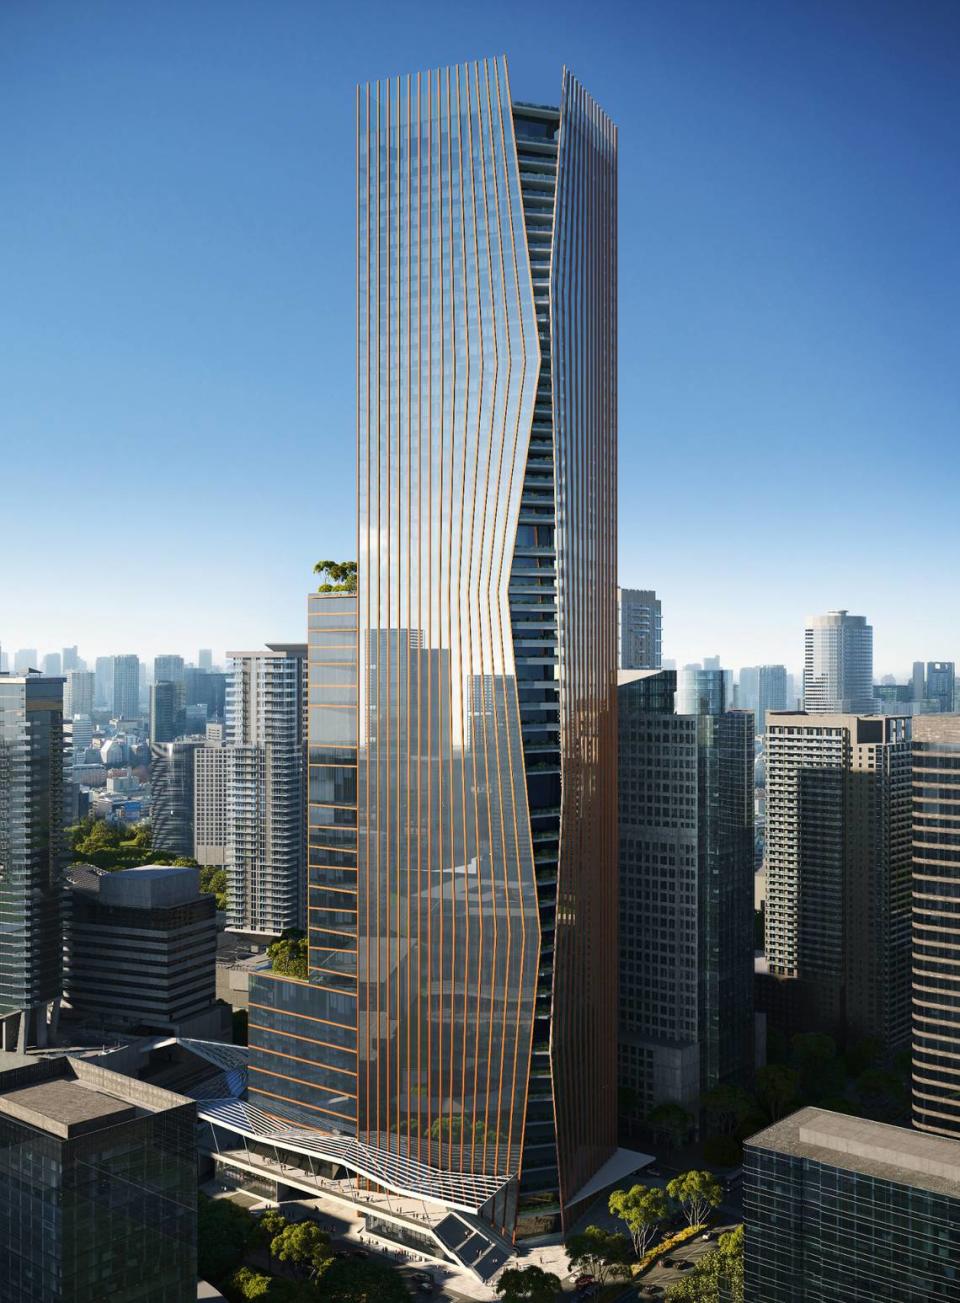 Los urbanizadores Swire Properties y Related Companies, de Nueva York, planean construir una torre de gran altura diseñada por Arquitectonica, One Brickell City Centre, en Brickell Avenue. Sería el edificio de oficinas más alto y grande de Miami.